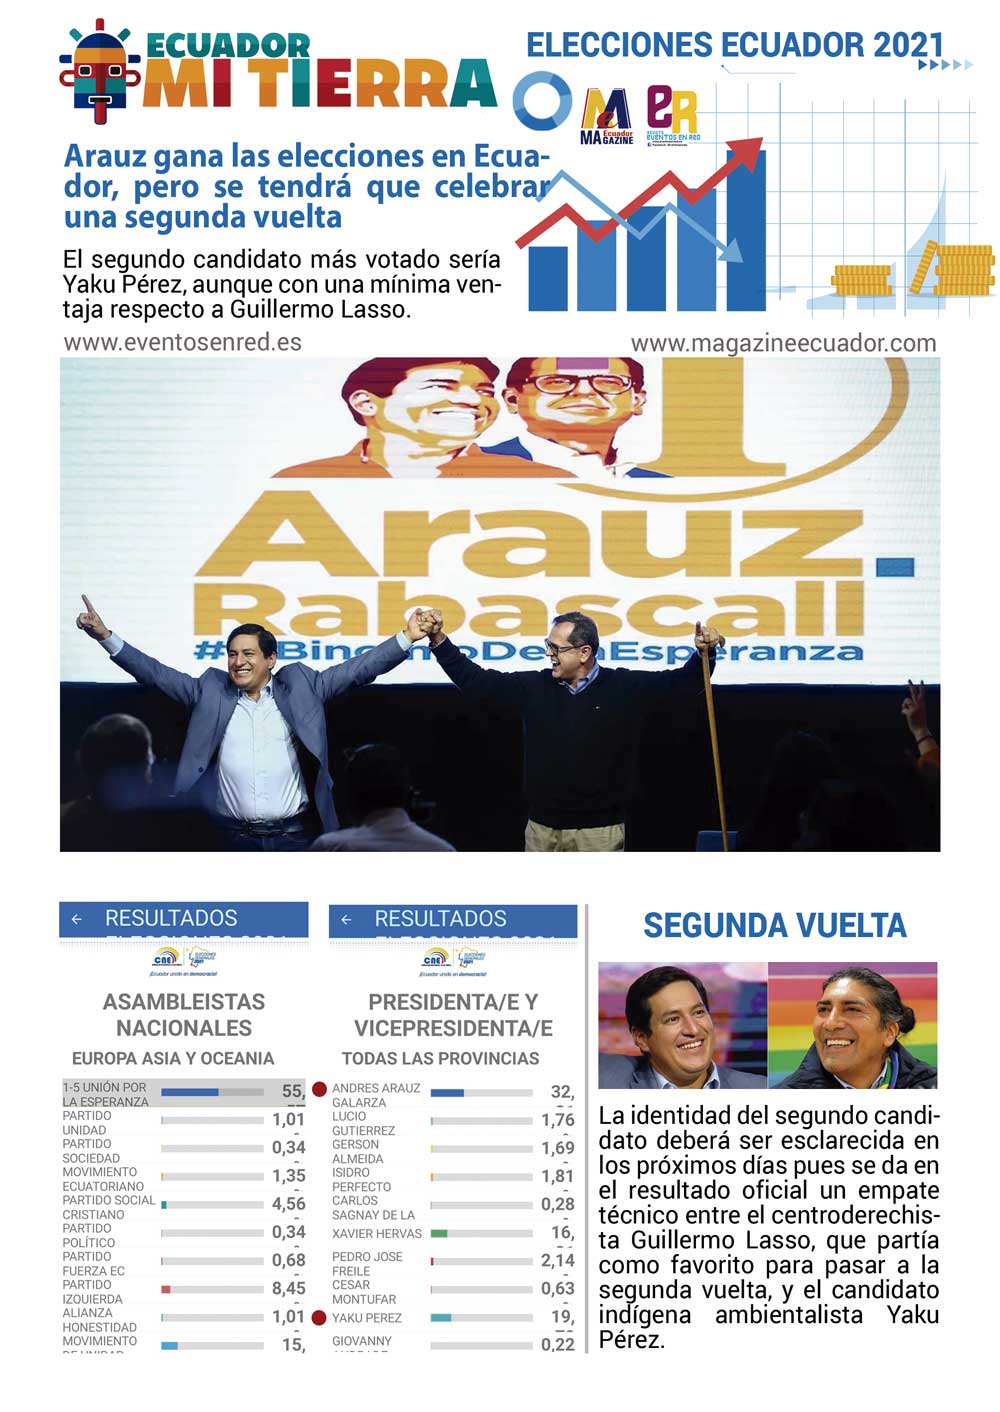 Arauz gana las elecciones en Ecuador y hay empate técnico en el segundo